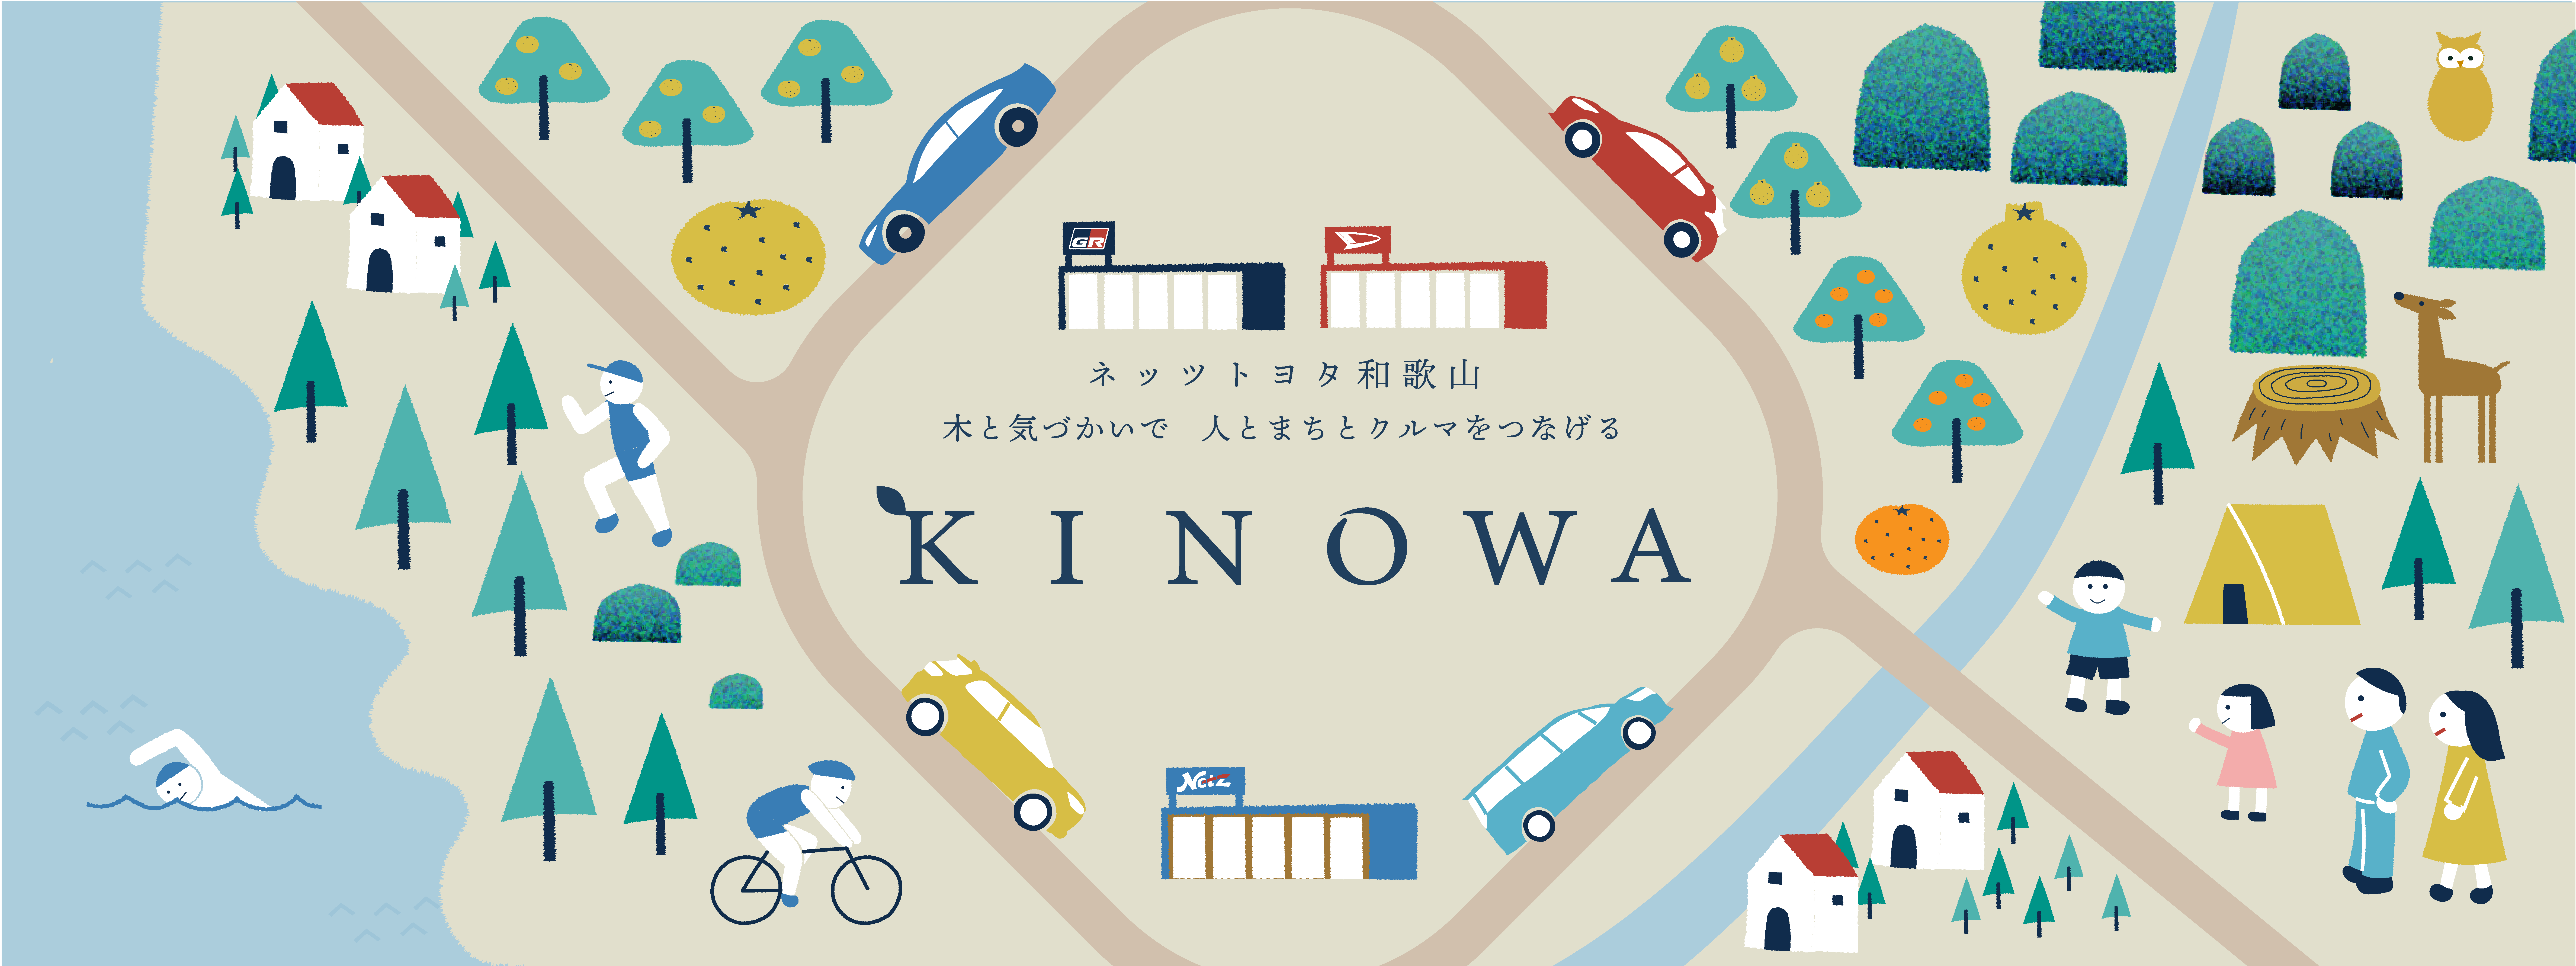 kinowa_メインビジュアル